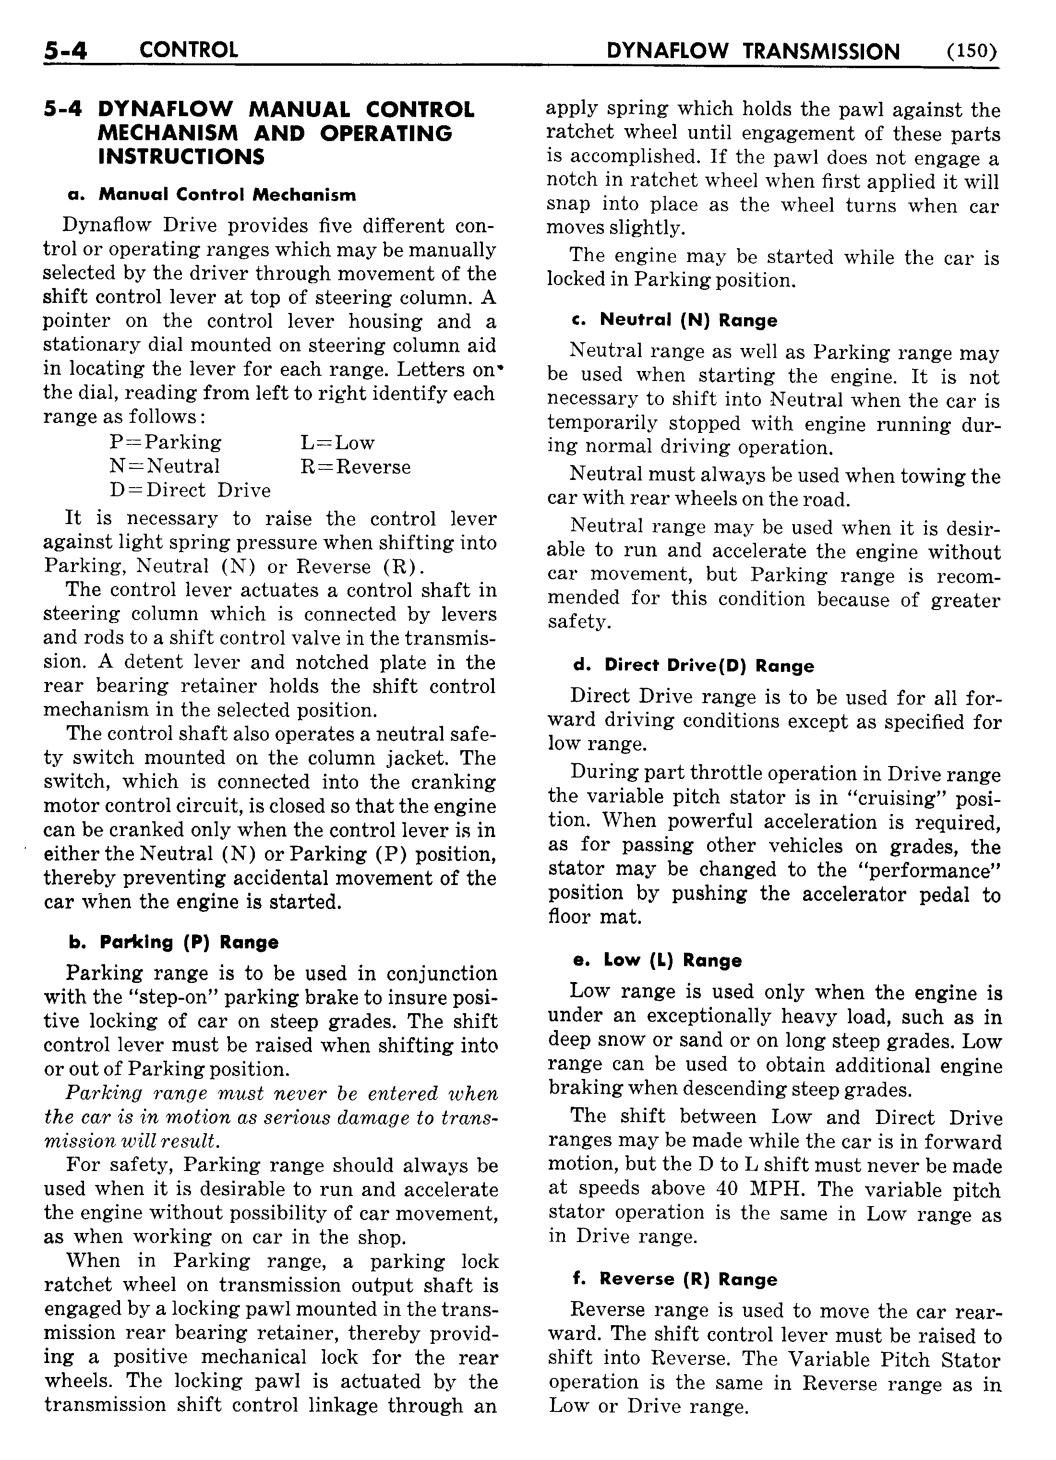 n_06 1956 Buick Shop Manual - Dynaflow-004-004.jpg